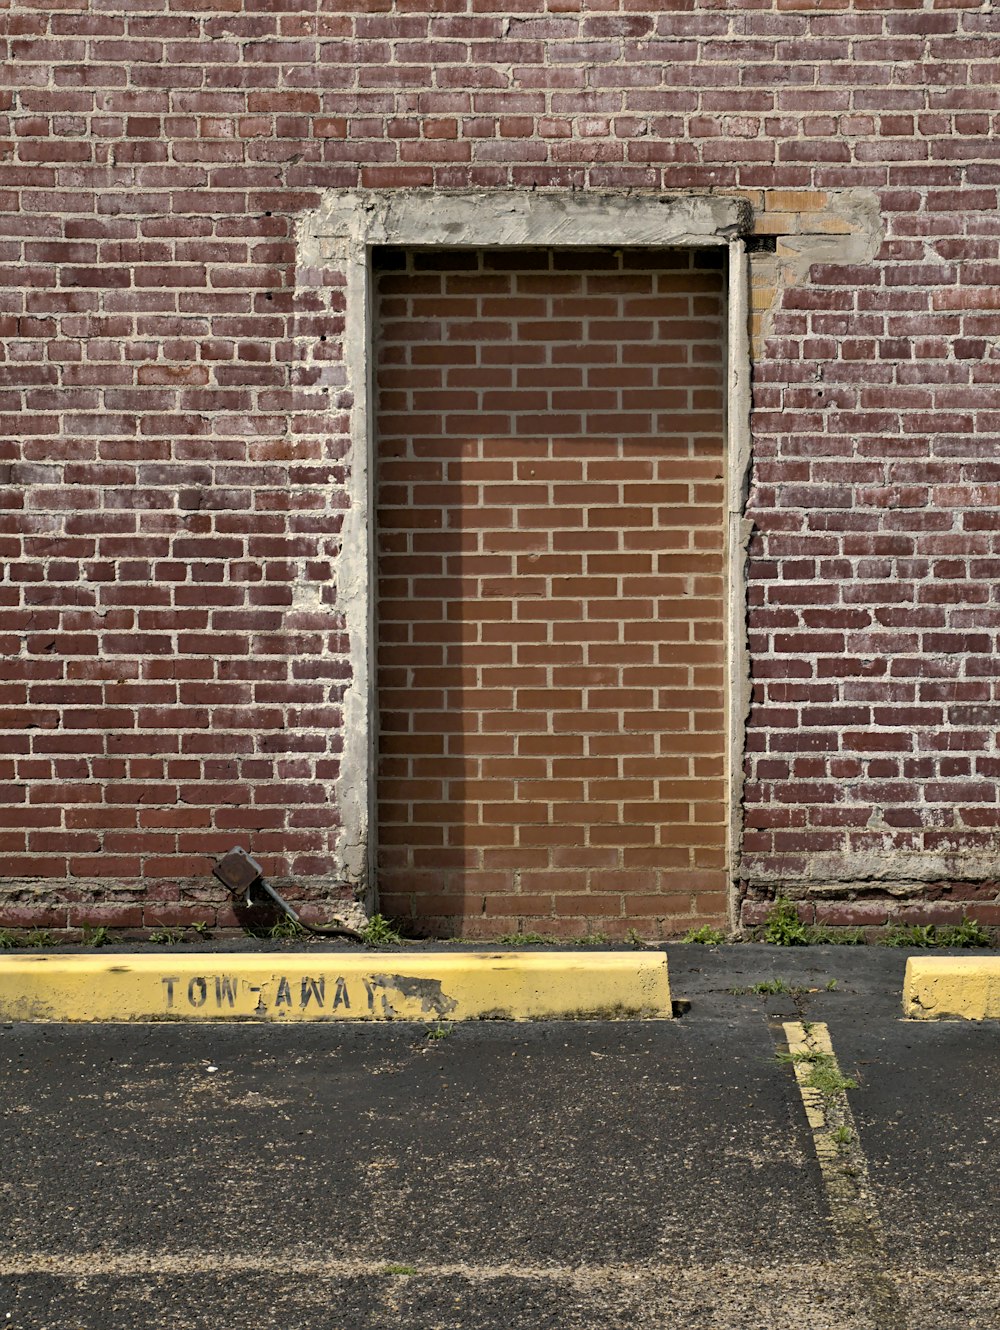 Mur de briques brunes avec panneau d’avertissement noir et jaune